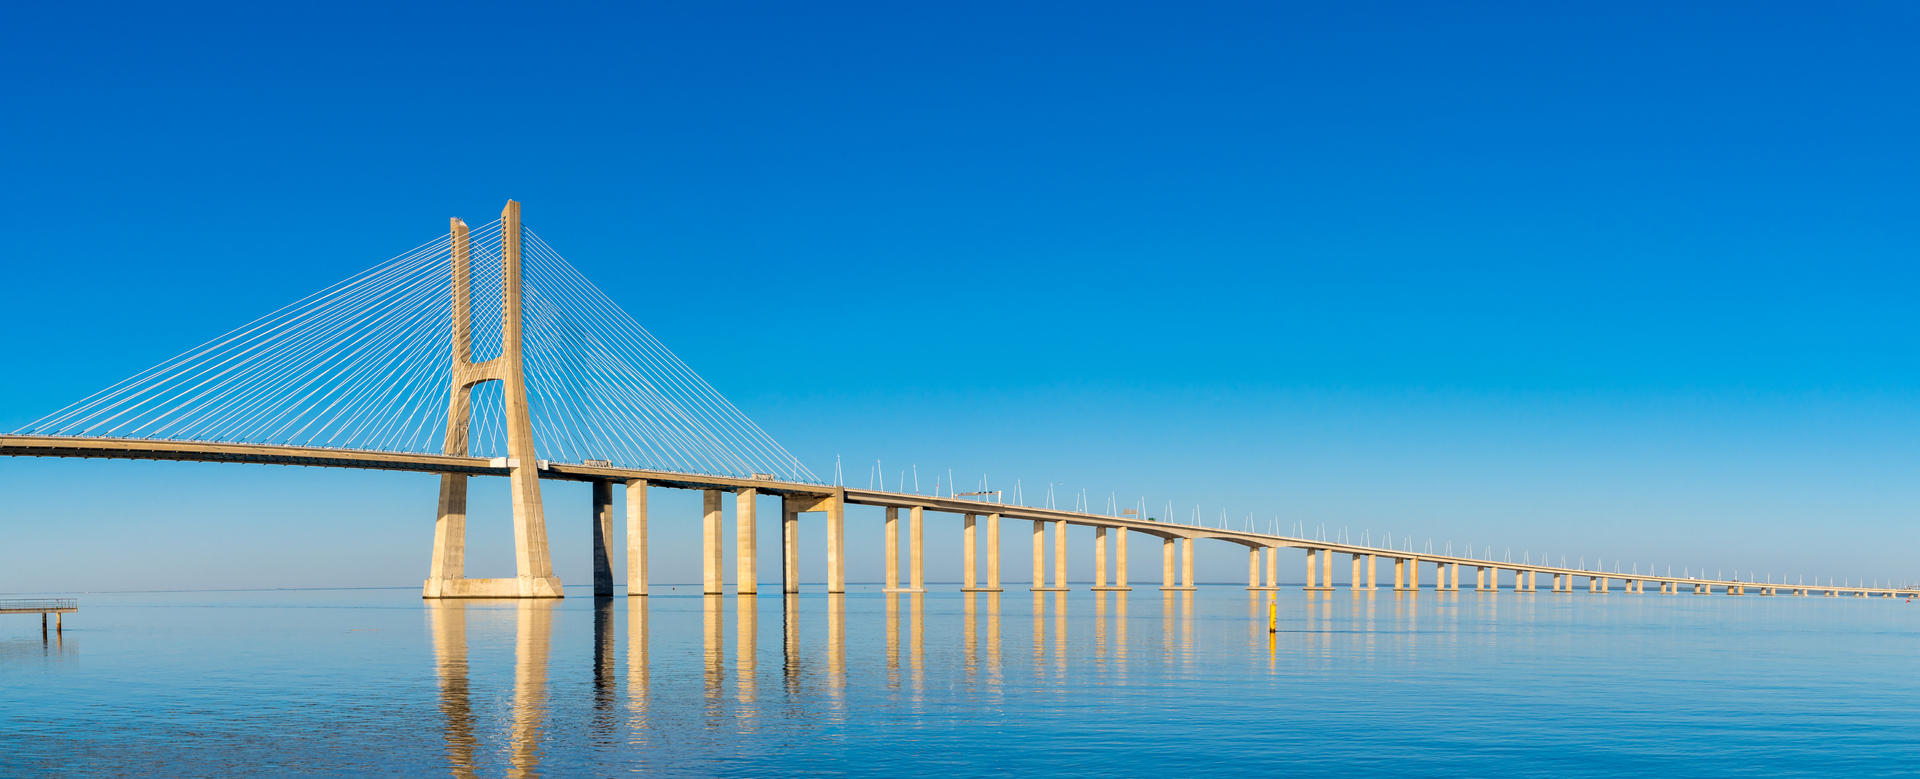 歐洲最長的橋